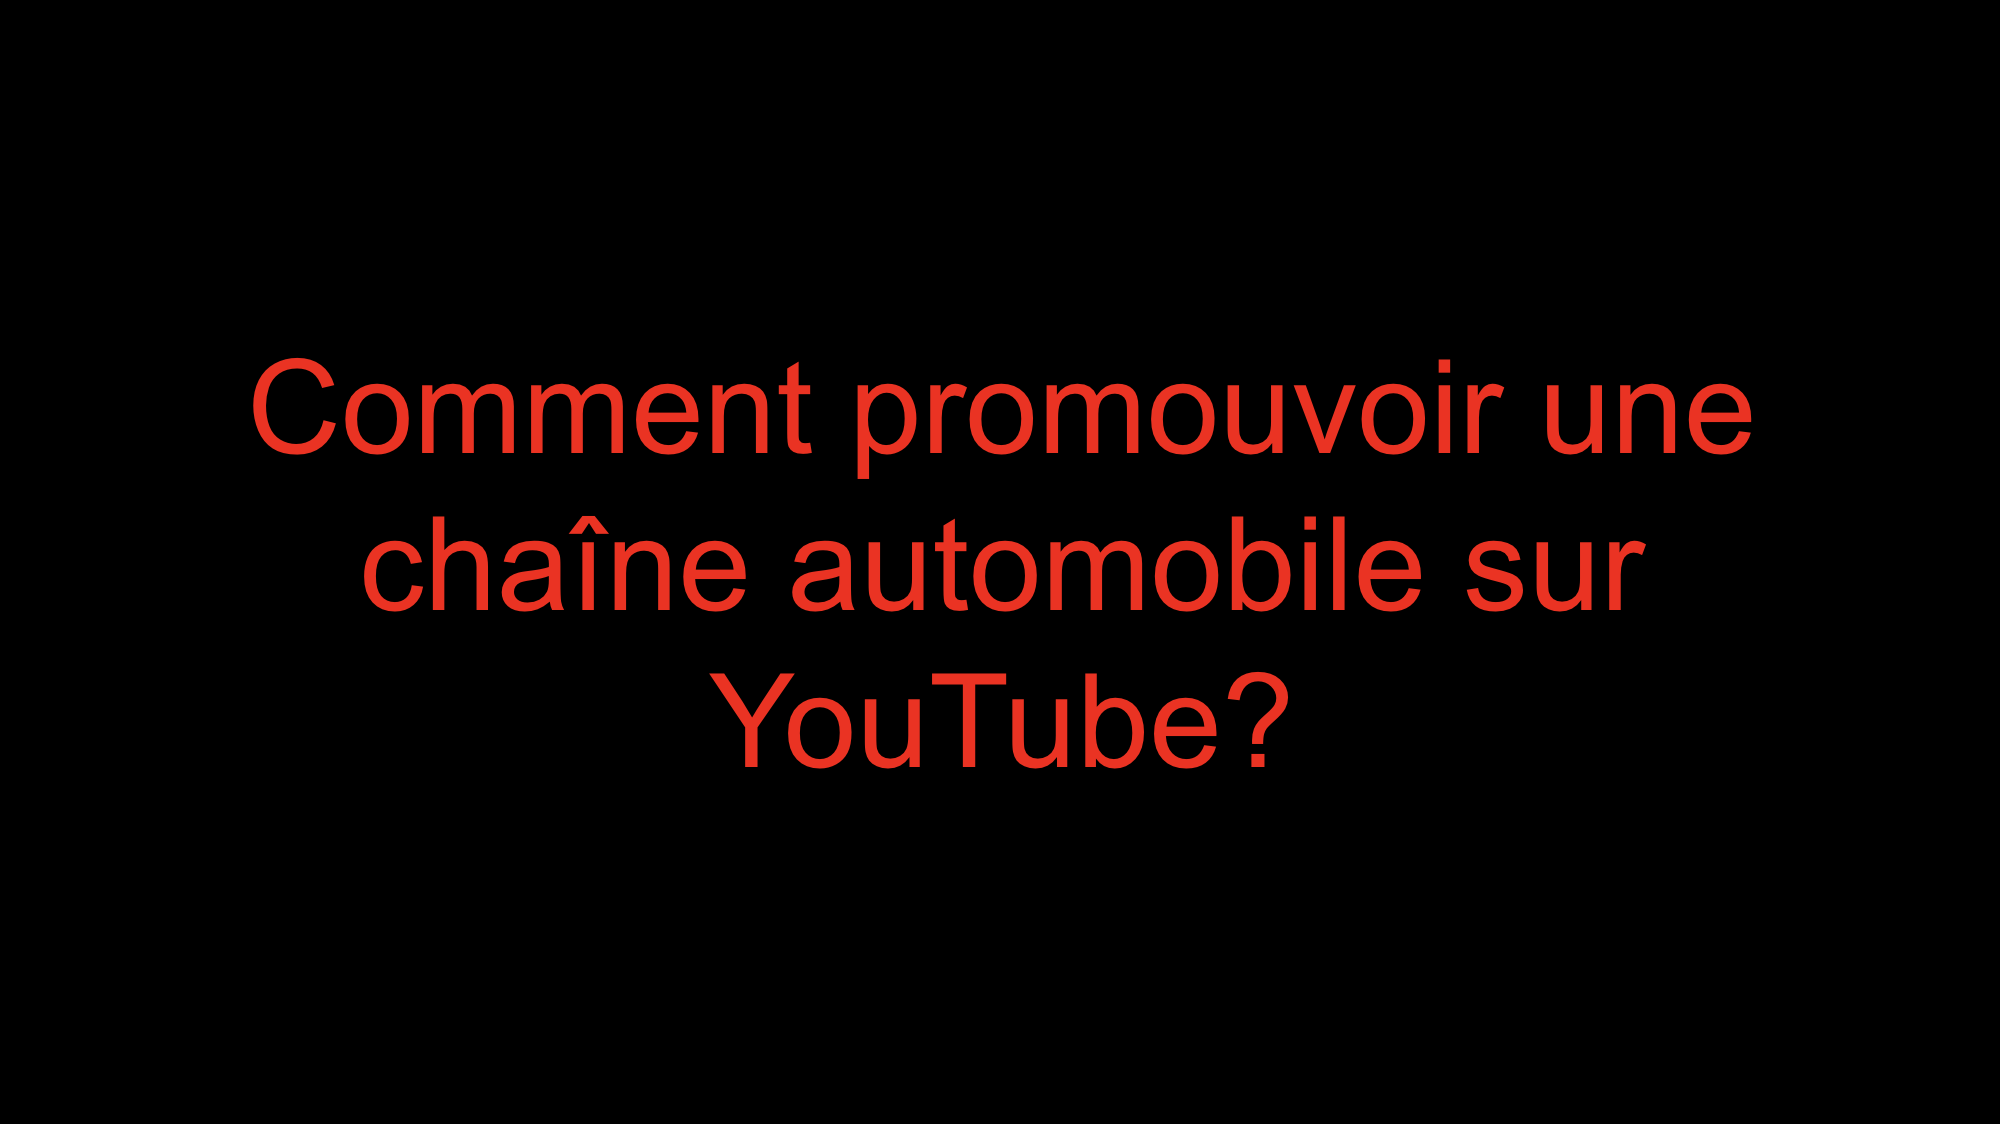 You are currently viewing Comment promouvoir une chaîne automobile sur YouTube?